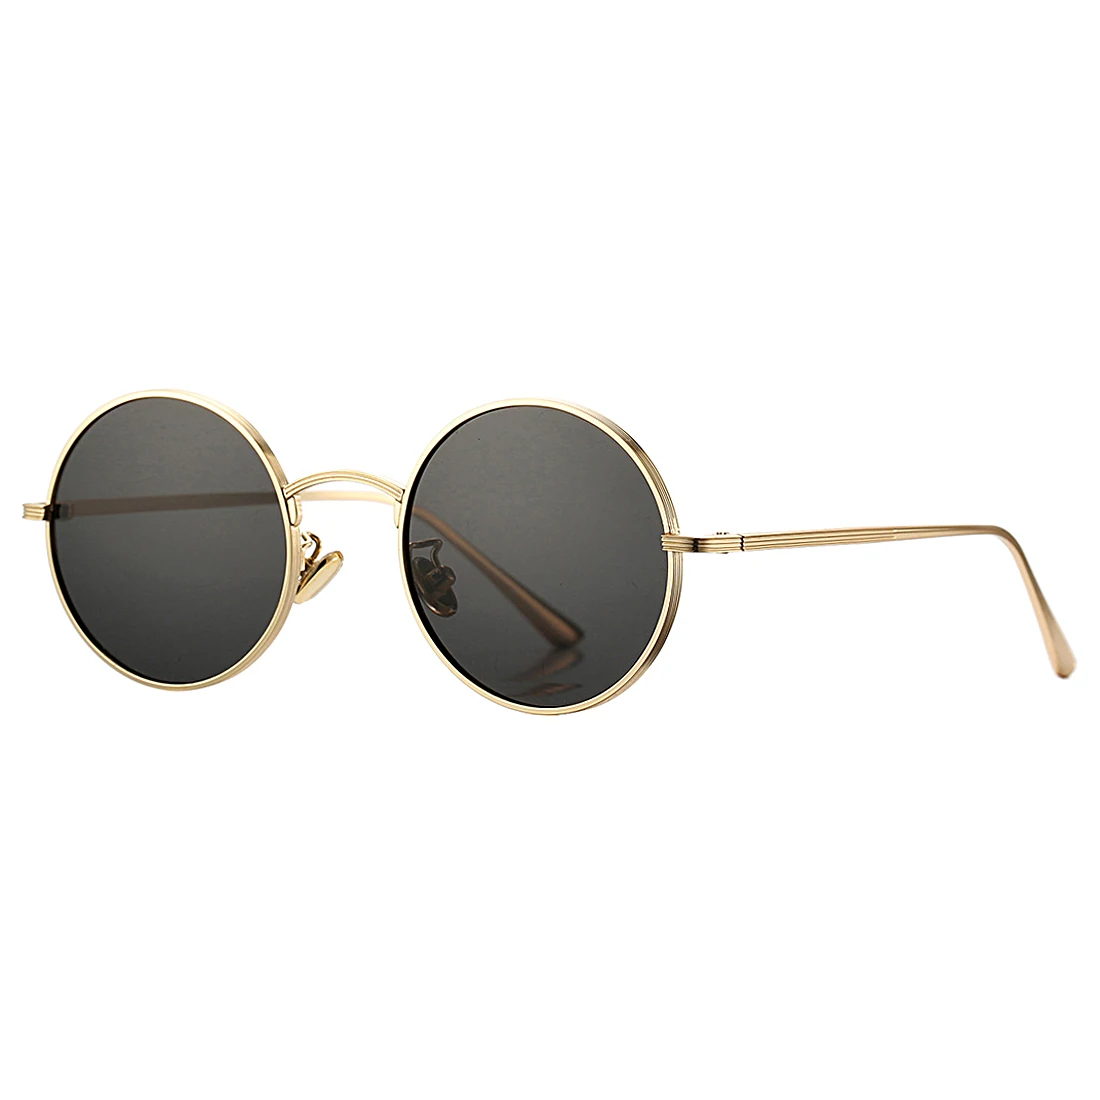 

Retro Small Round punk Sunglasses for Men Women John Lennon Style sunglasses 2022, Picture shown